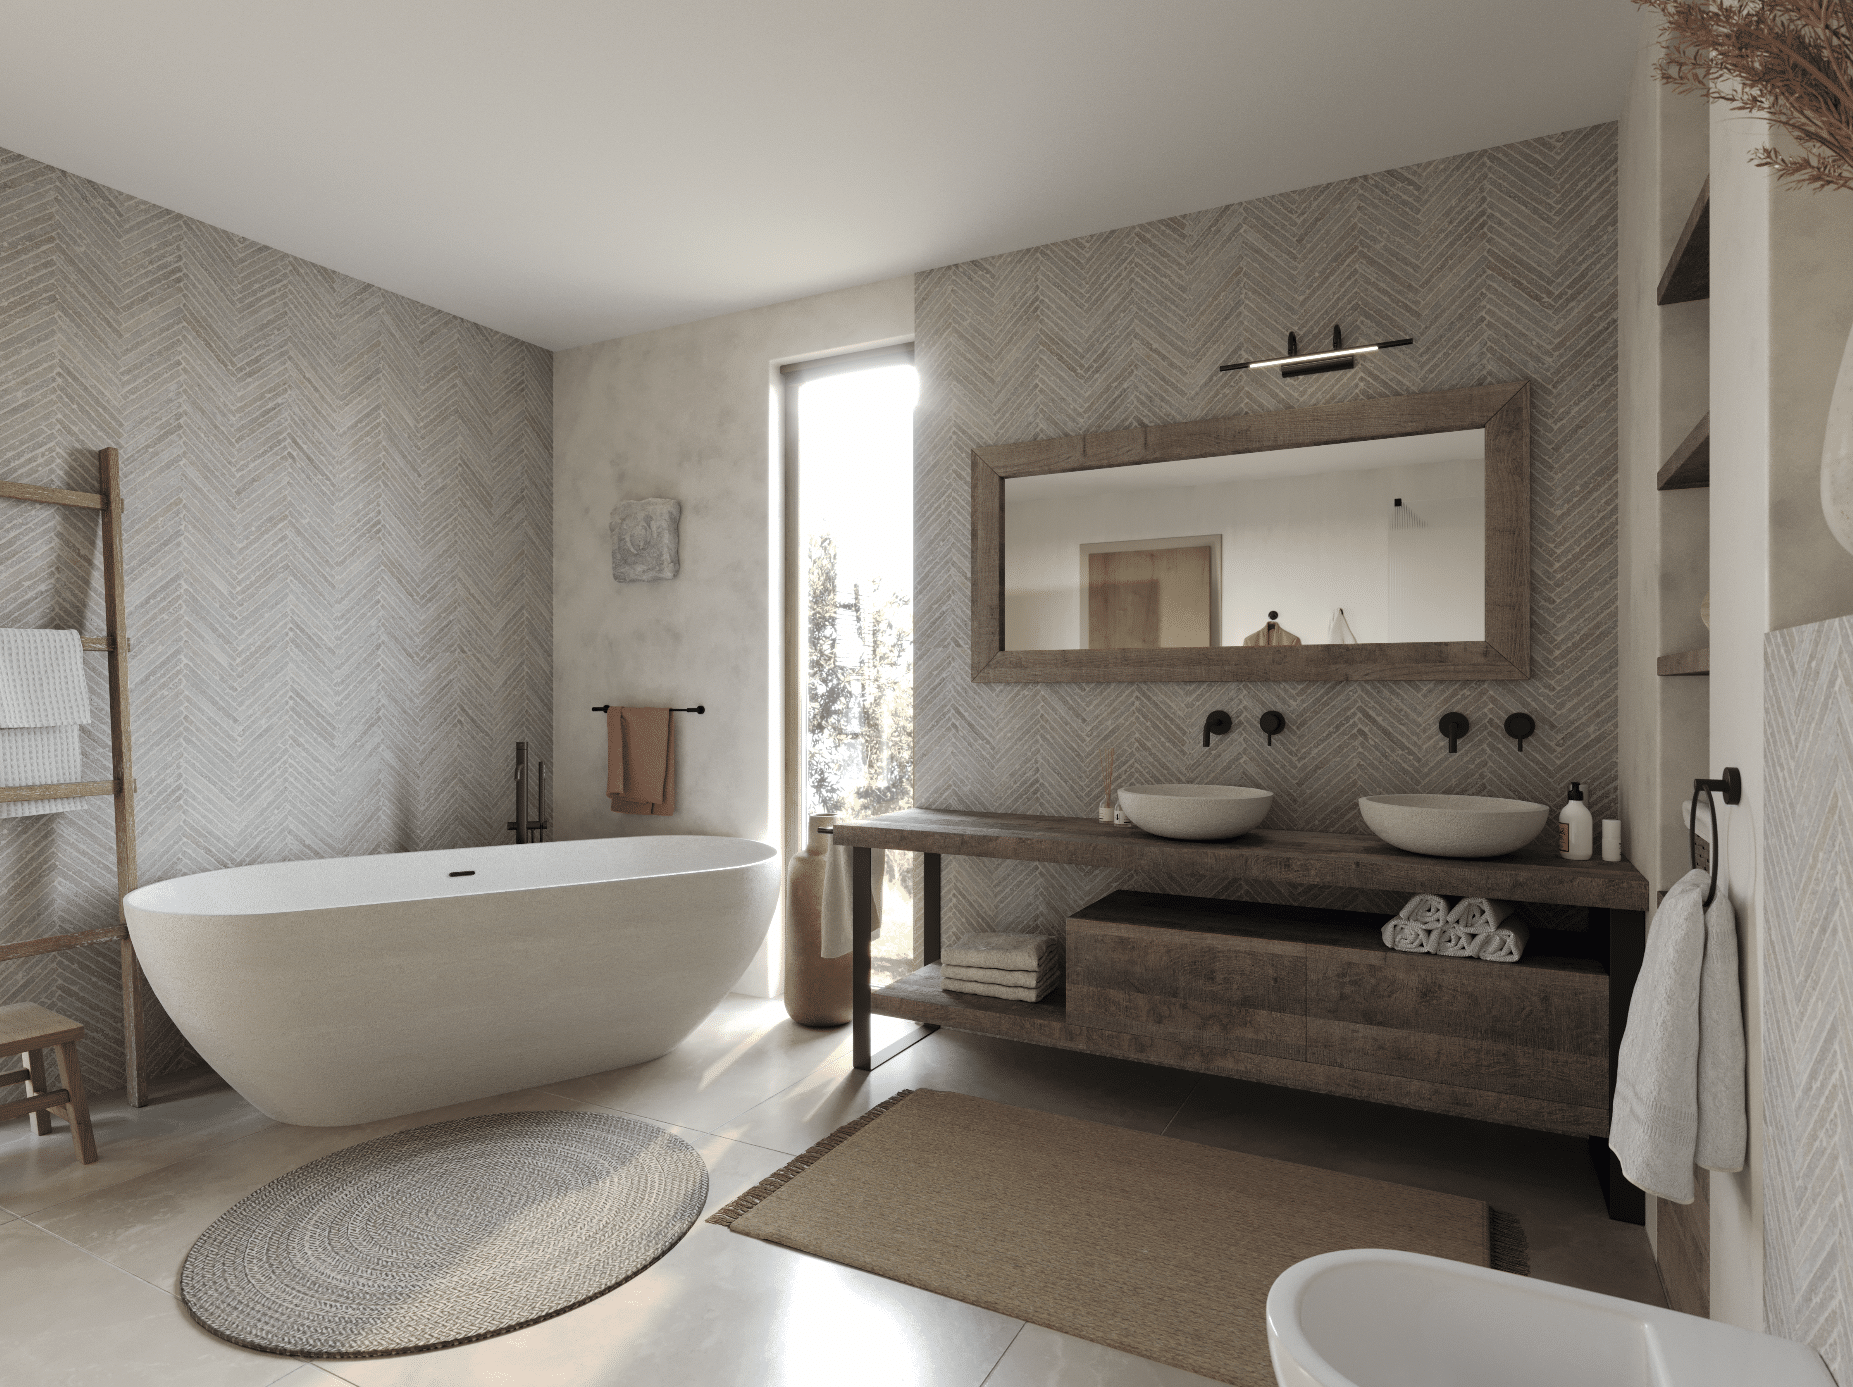 KRONOSPAN zeigt ein Badezimmer in Naturtönen mit einer freistehenden Badewanne, einem Waschtisch aus Holz und gemusterten Wänden.